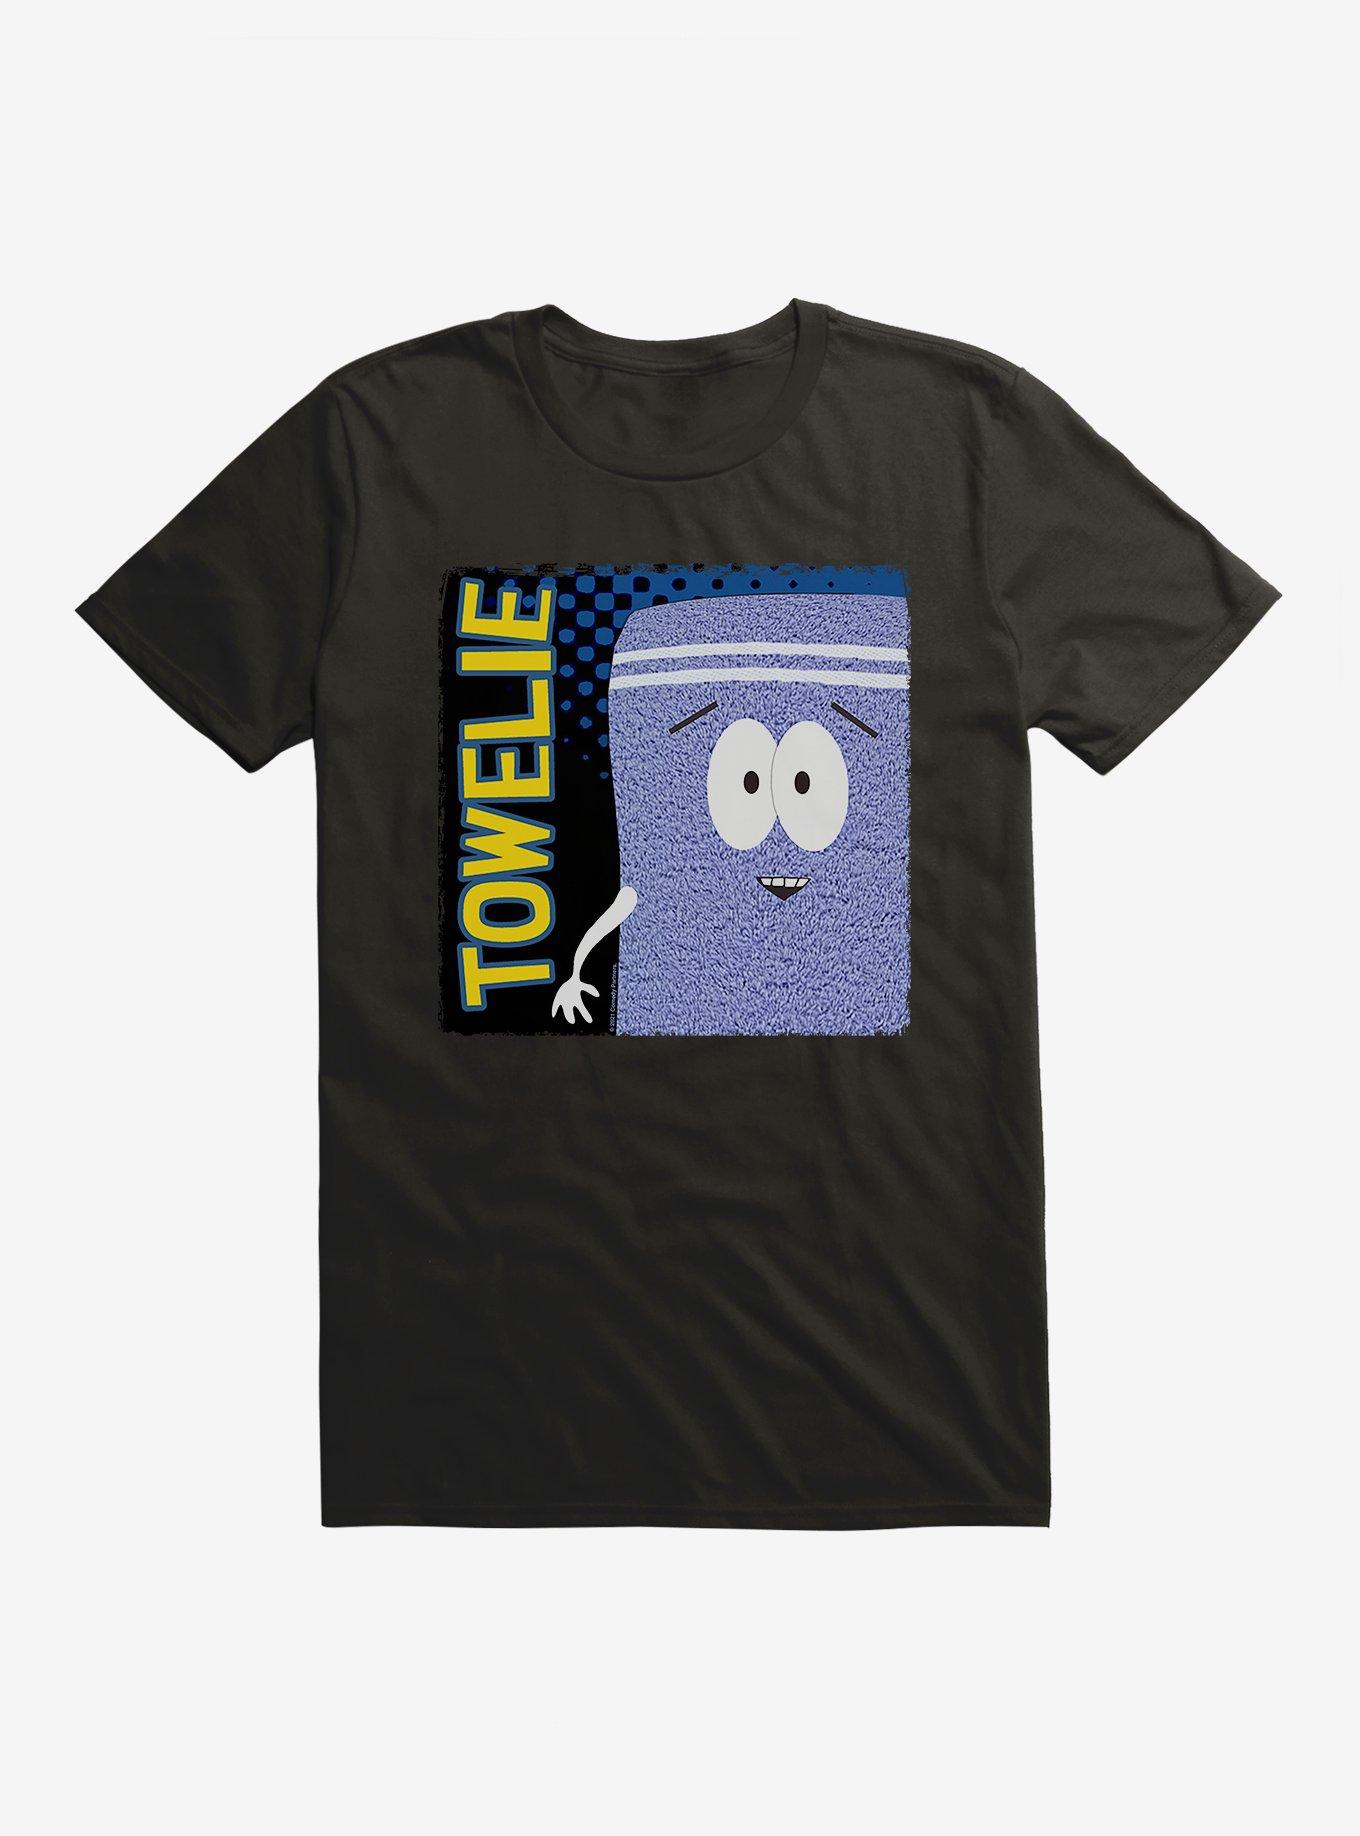 South Park Towelie Intro T-Shirt, , hi-res